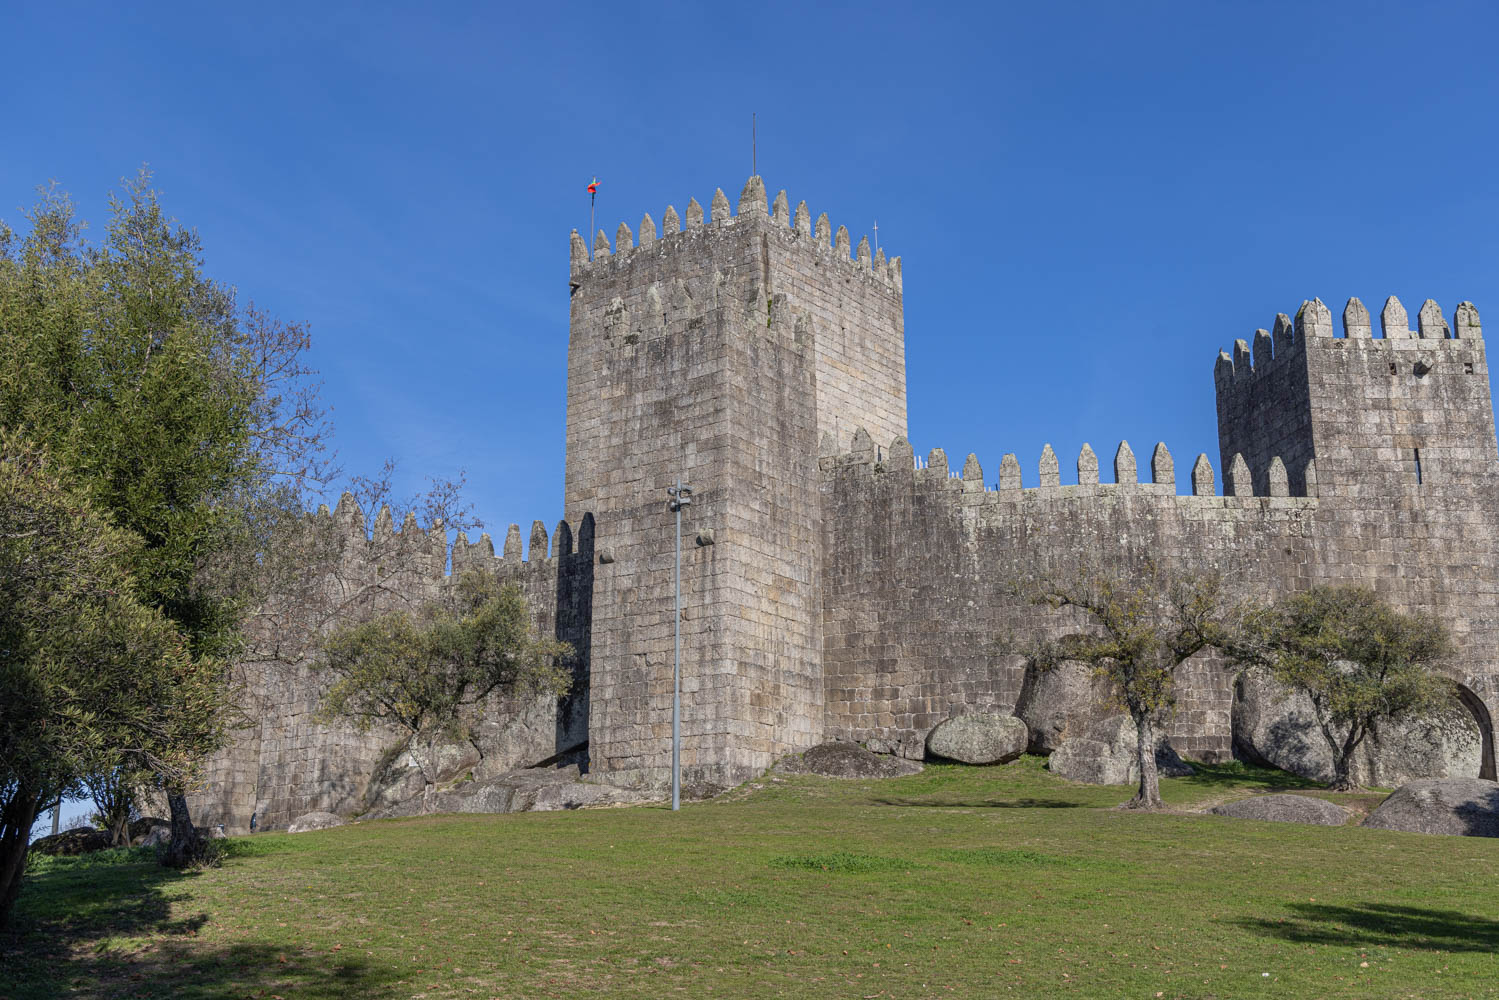 The Castelo de Guimaraes